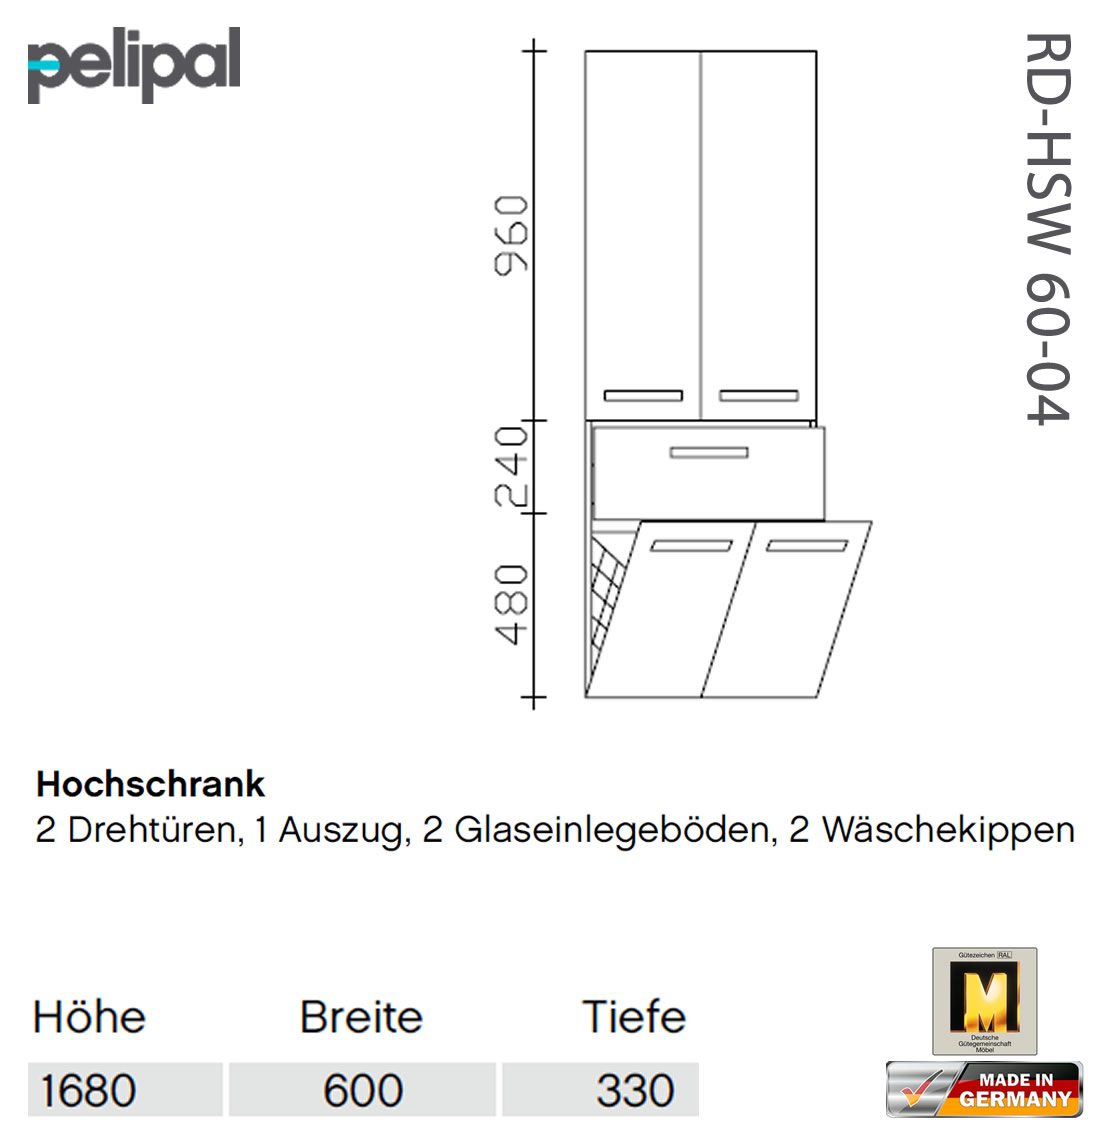 Pelipal 7005 Hochschrank 168 cm - RD-HSW 60-04